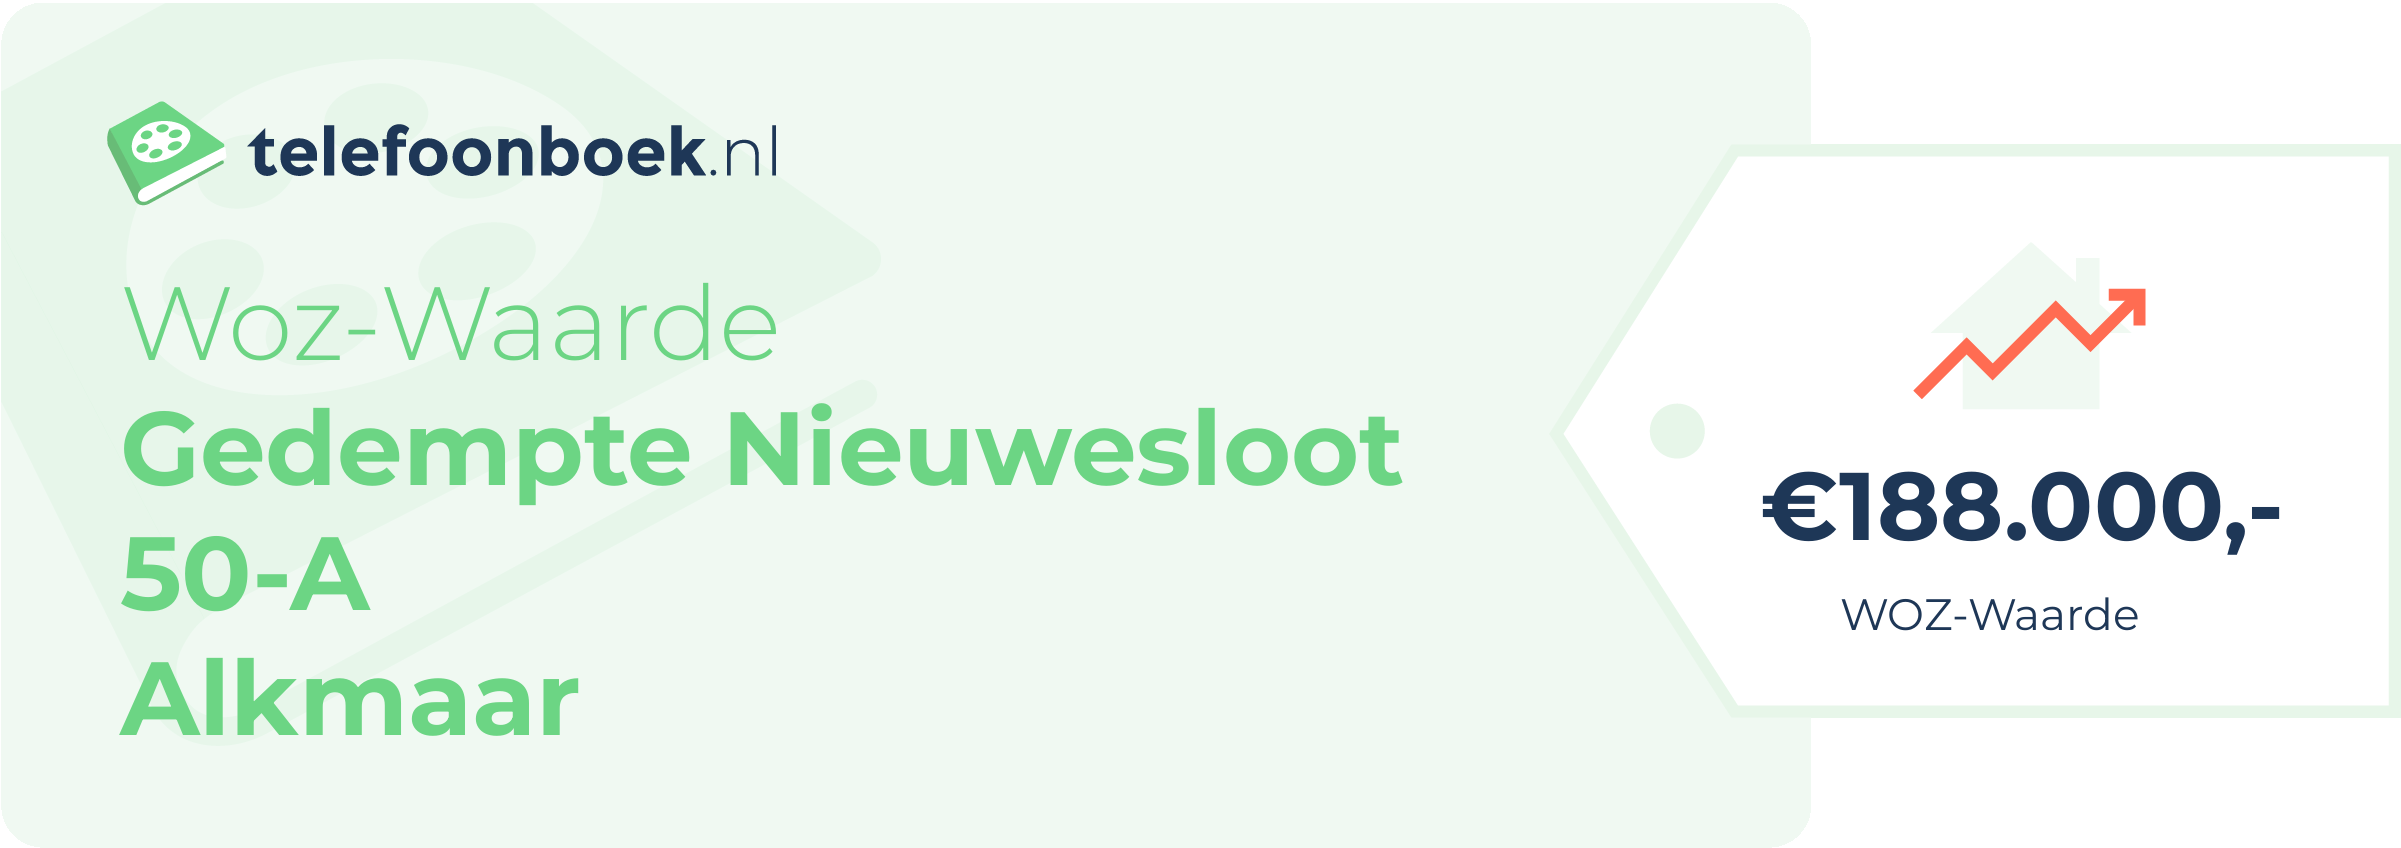 WOZ-waarde Gedempte Nieuwesloot 50-A Alkmaar